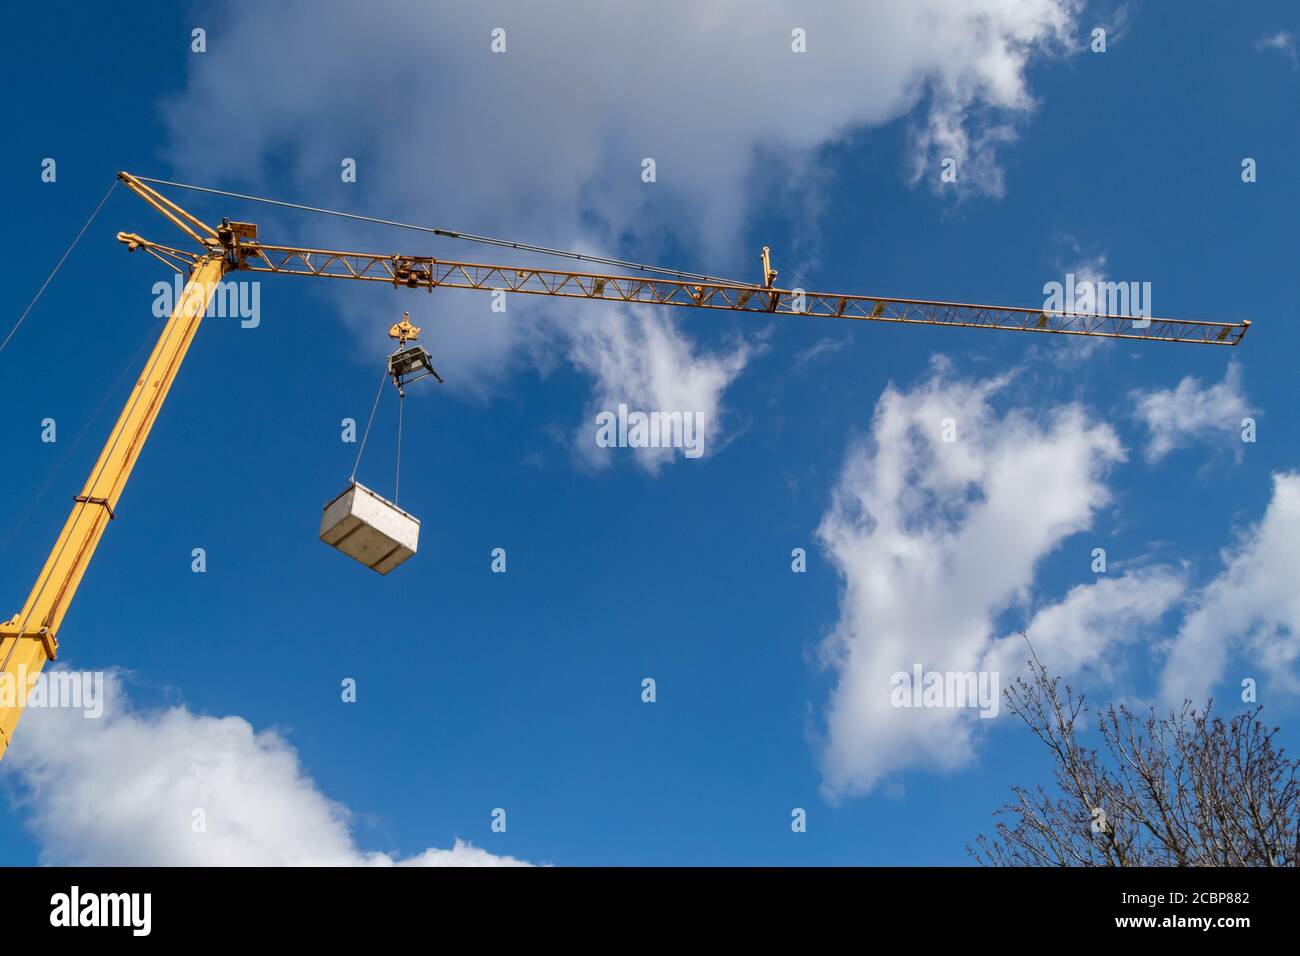 Sollevatore o gru mobile su cielo nuvoloso in città utilizzato per lavori di costruzione o lavori. Industria edile, movimentazione di materiali pesanti. Foto Stock